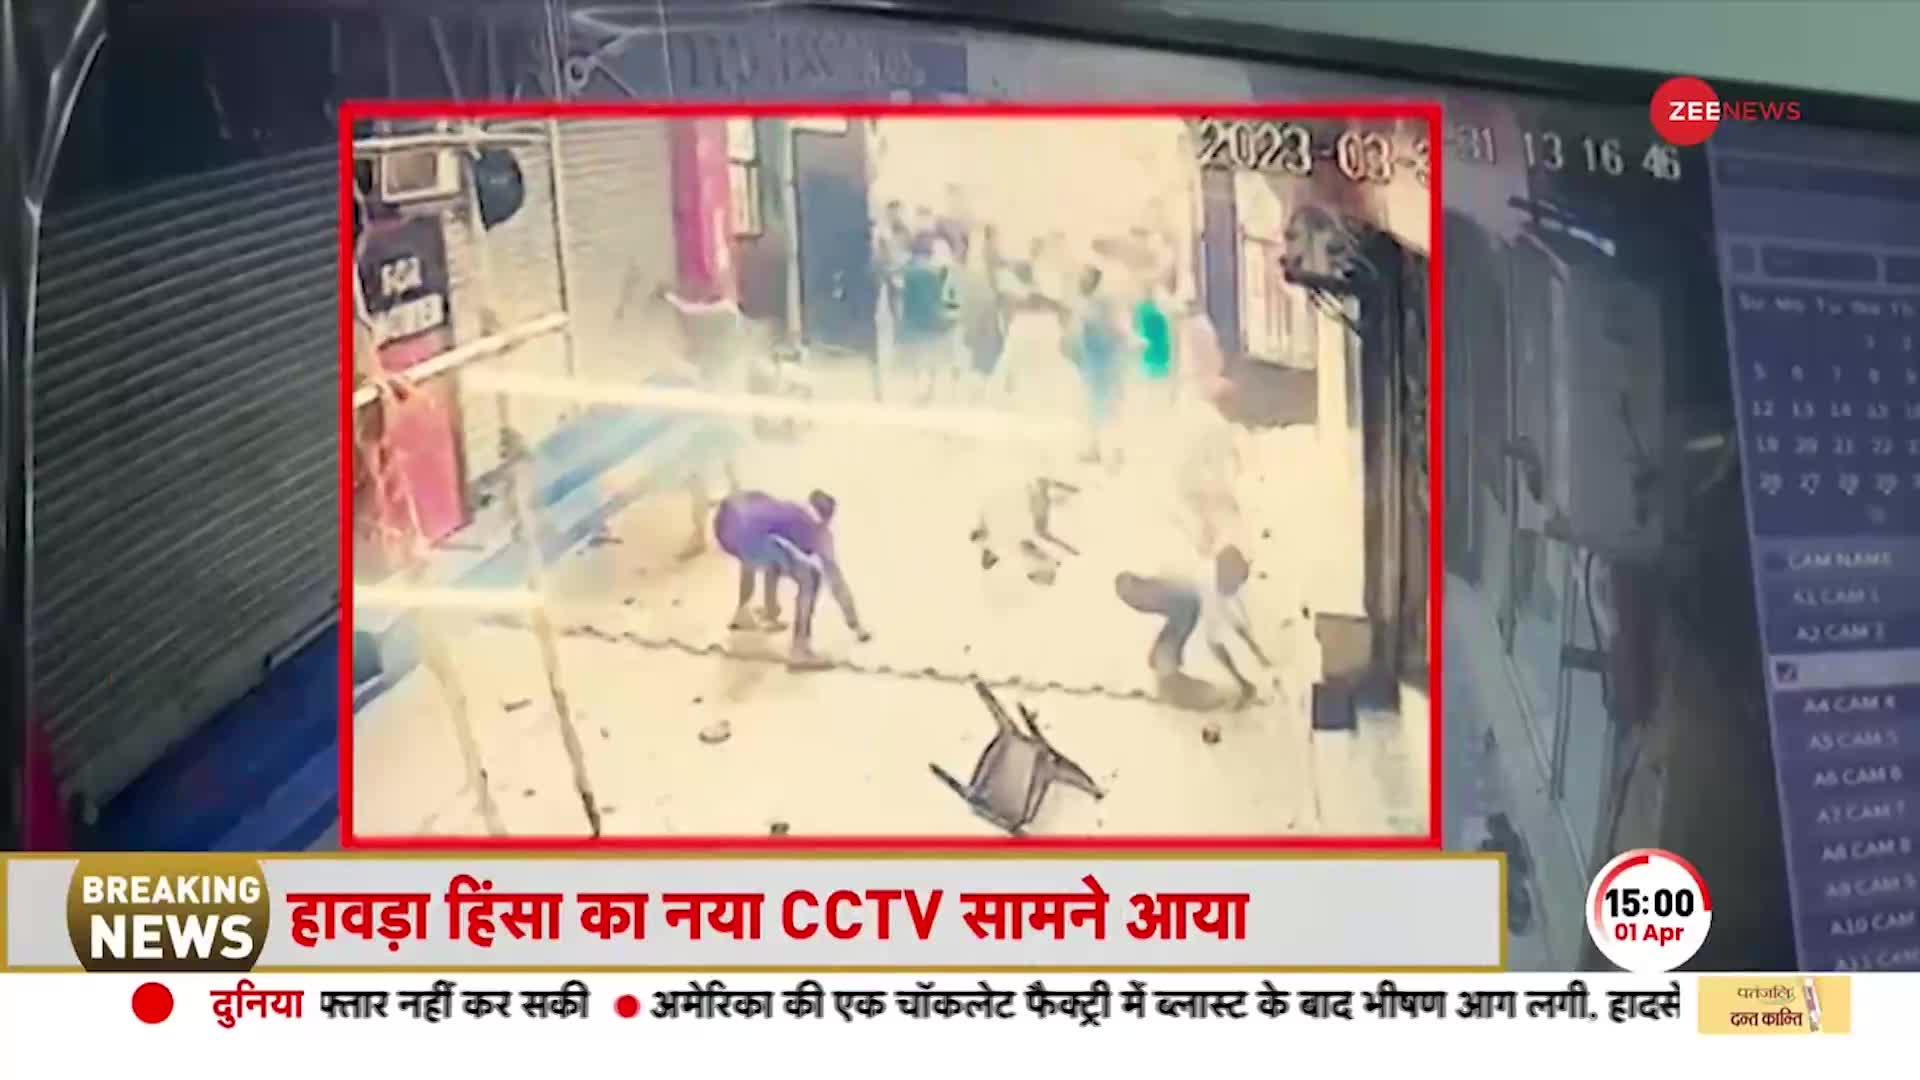 Howrah हिंसा का सबसे विस्फोटक CCTV वीडियो, सोसाइटी में दंगाइयों ने की थी तोड़फोड़